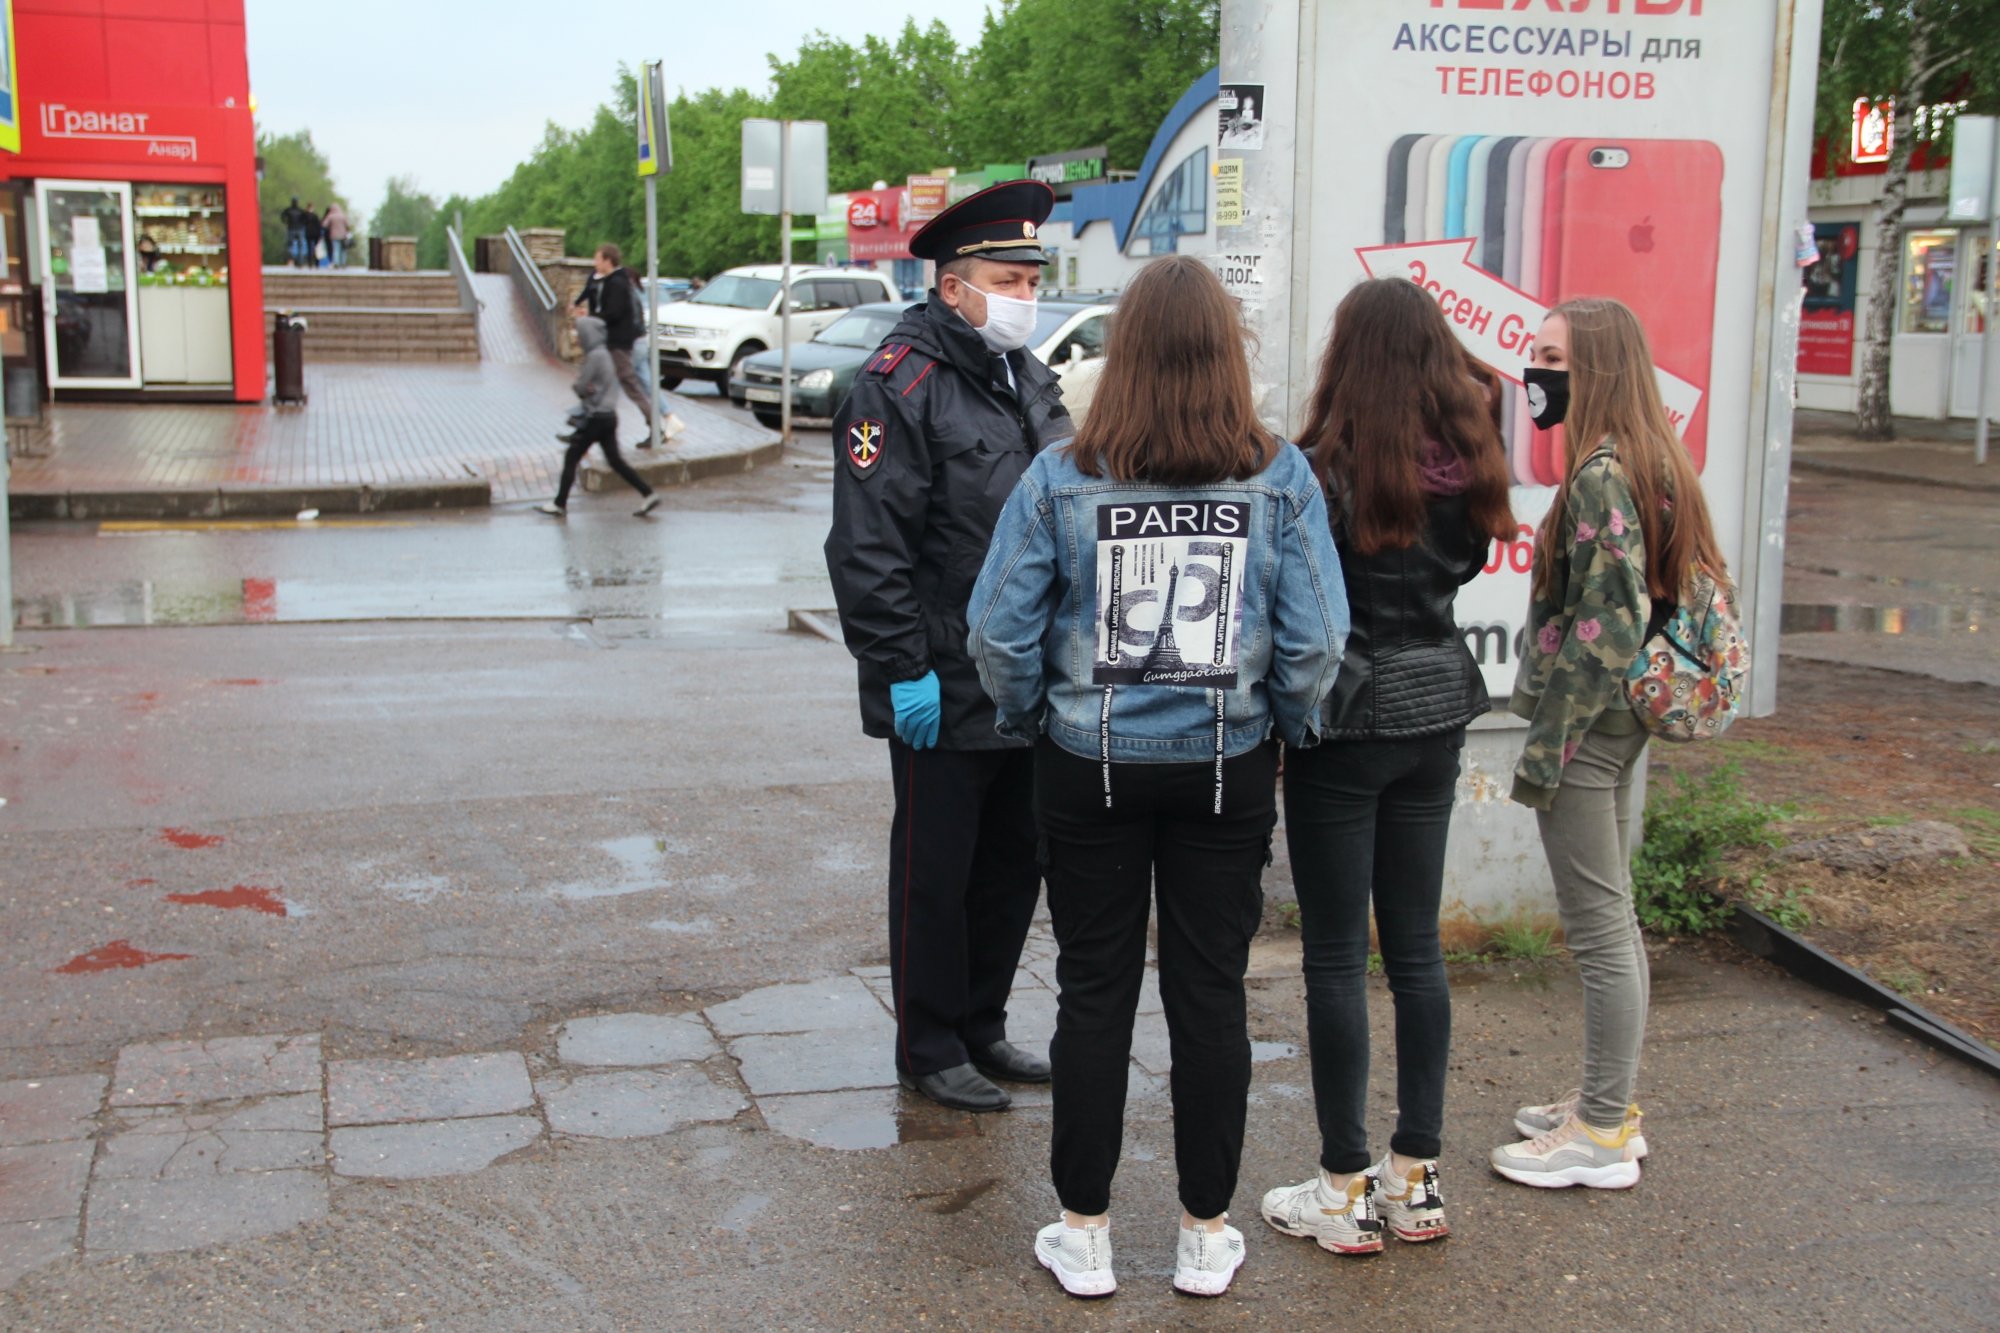 Полиция Челнов начала рейды по нарушителям масочного режима (фото)